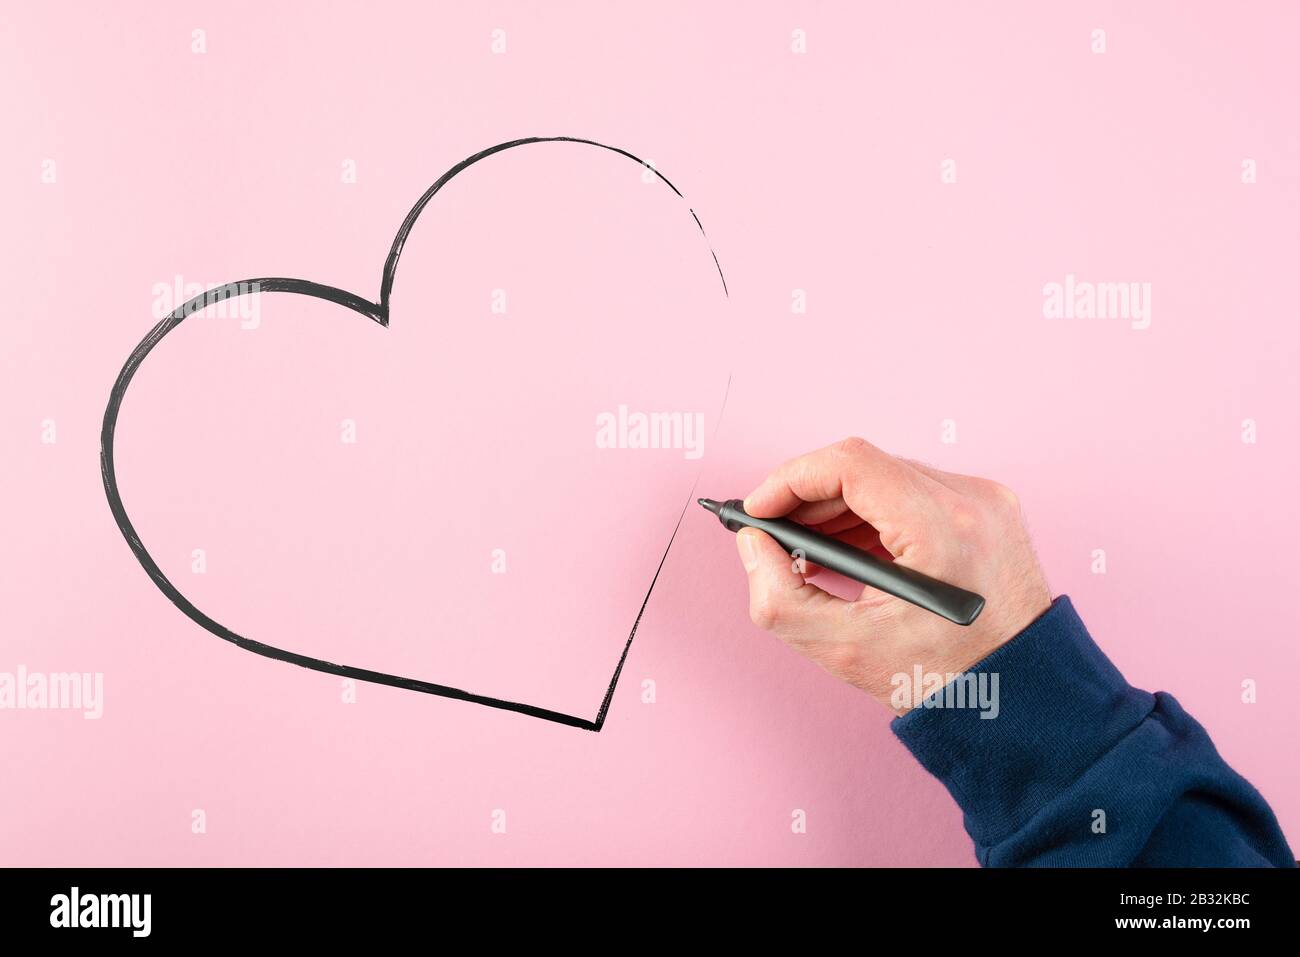 Handzeichnen von Herzform mit Filzstift auf pinkfarbenem Hintergrund, Liebe und Zuneigung Konzept Stockfoto